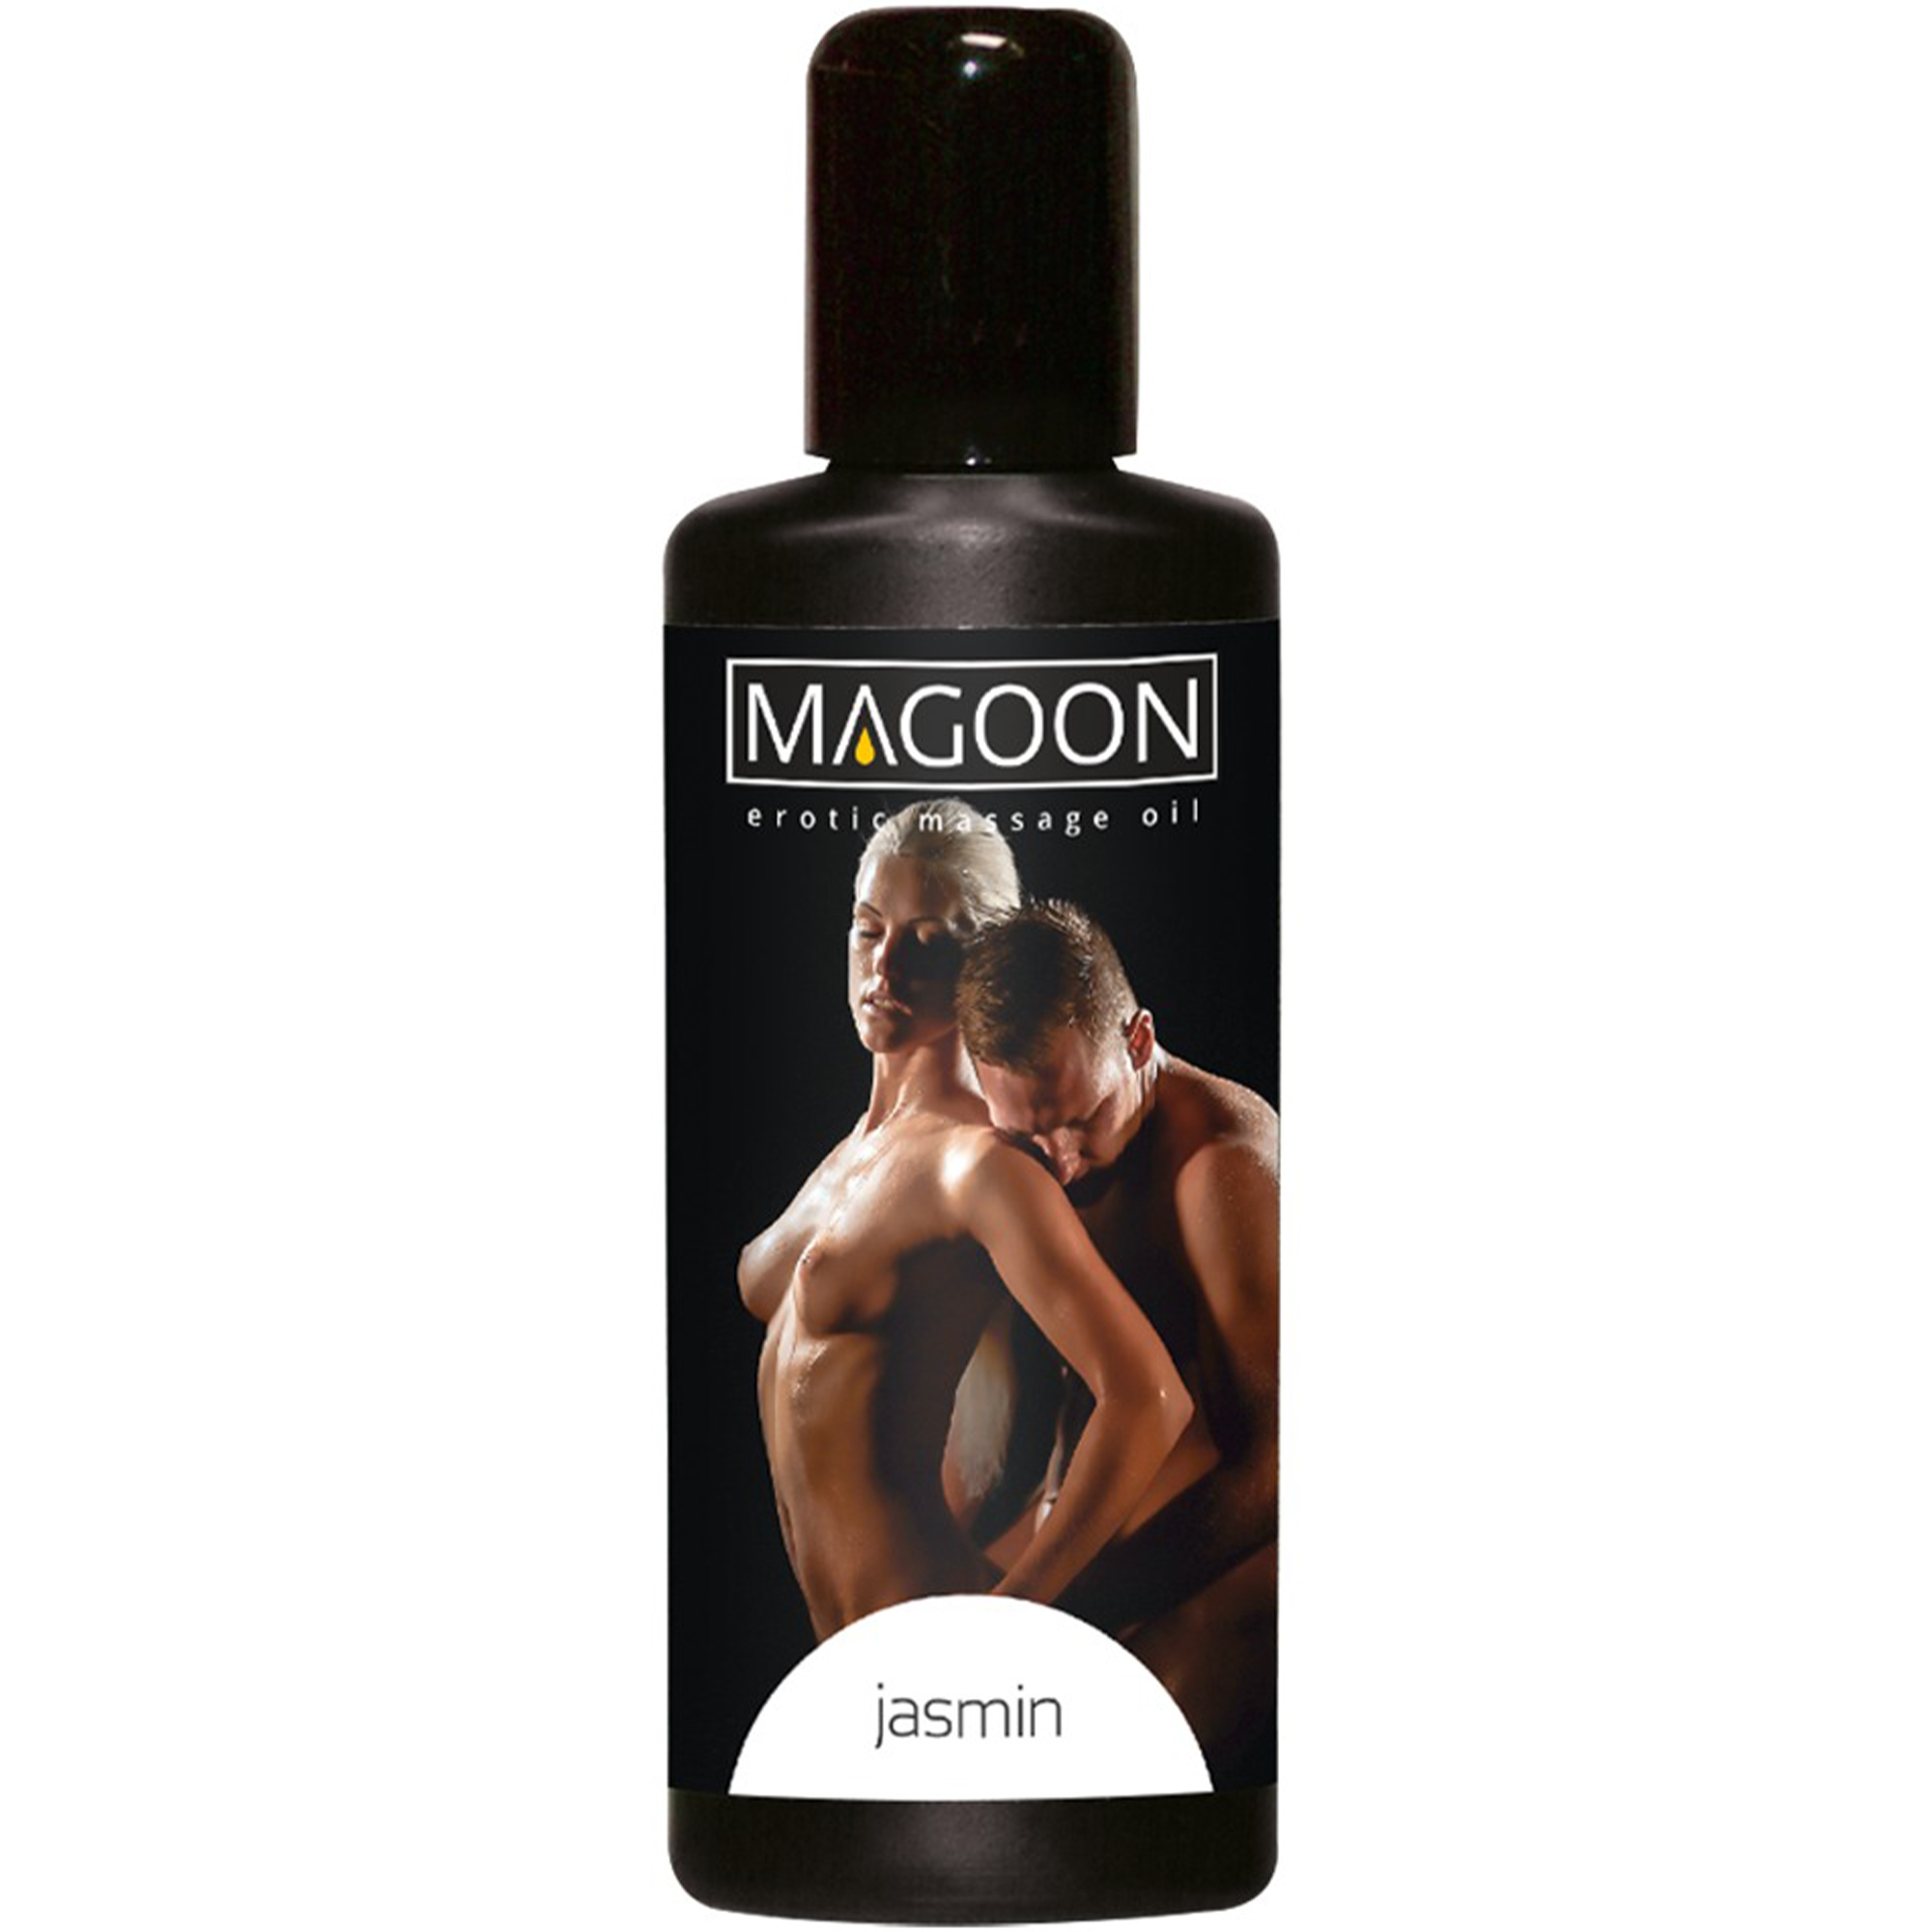 Jasmin Erotic Massage Oil 50ml